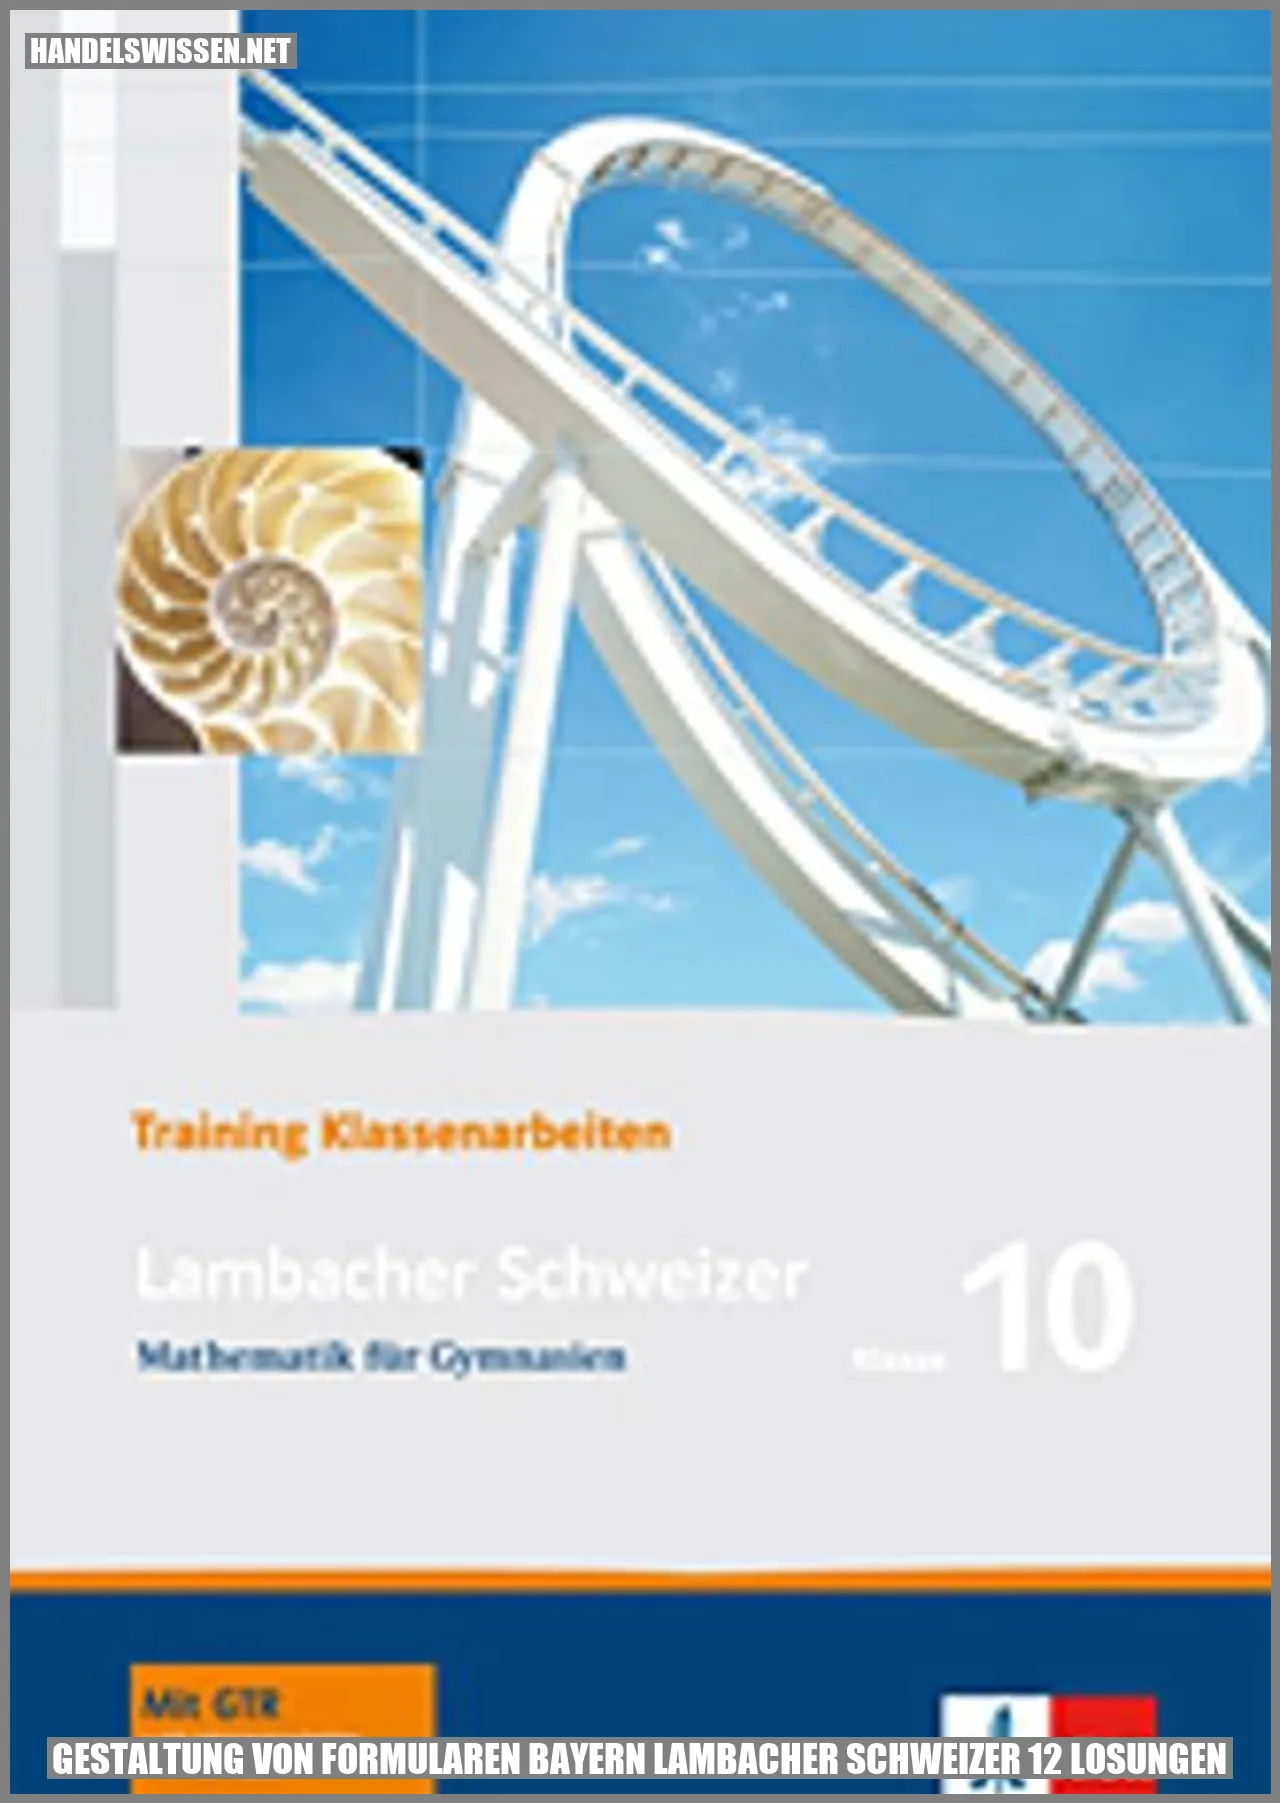 Gestaltung von Formularen Bayern Lambacher Schweizer 12 Lösungen